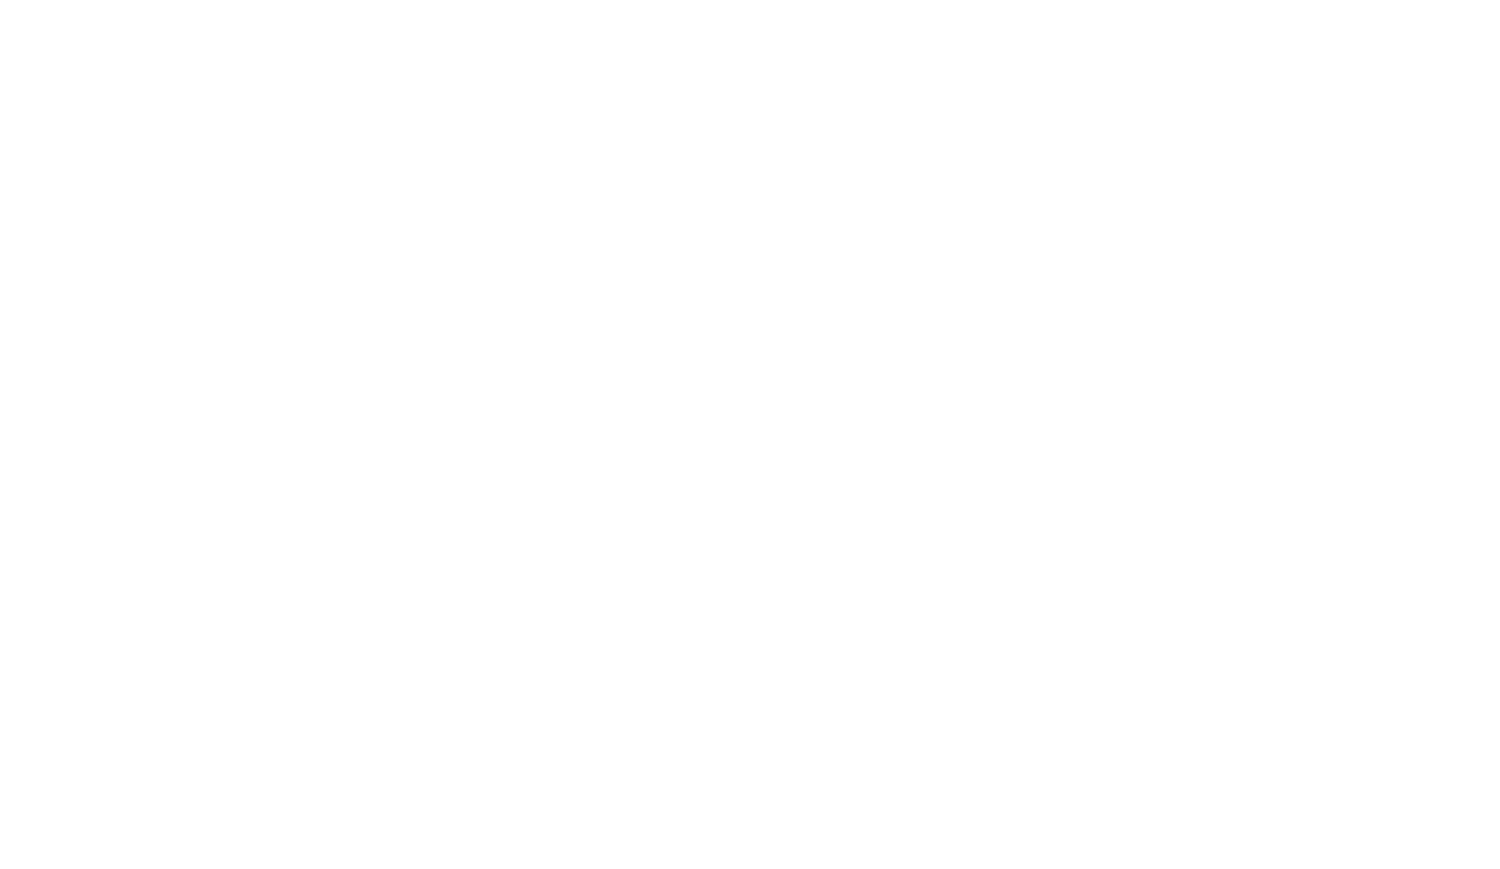 Bombshell Movement Studio